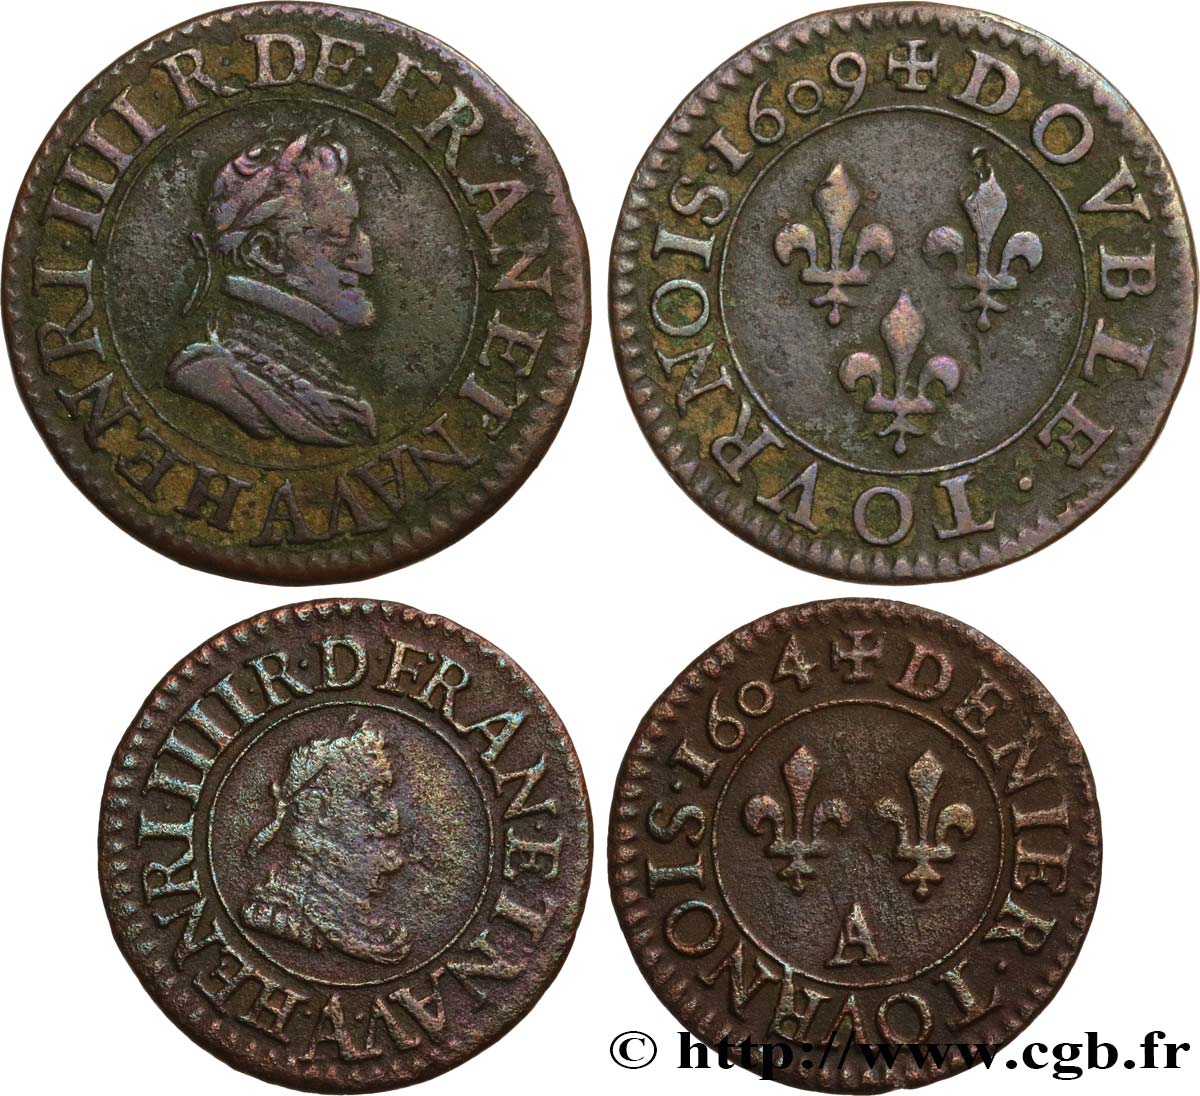 HENRY IV Lot de 2 monnaies royales n.d. s.l. q.BB